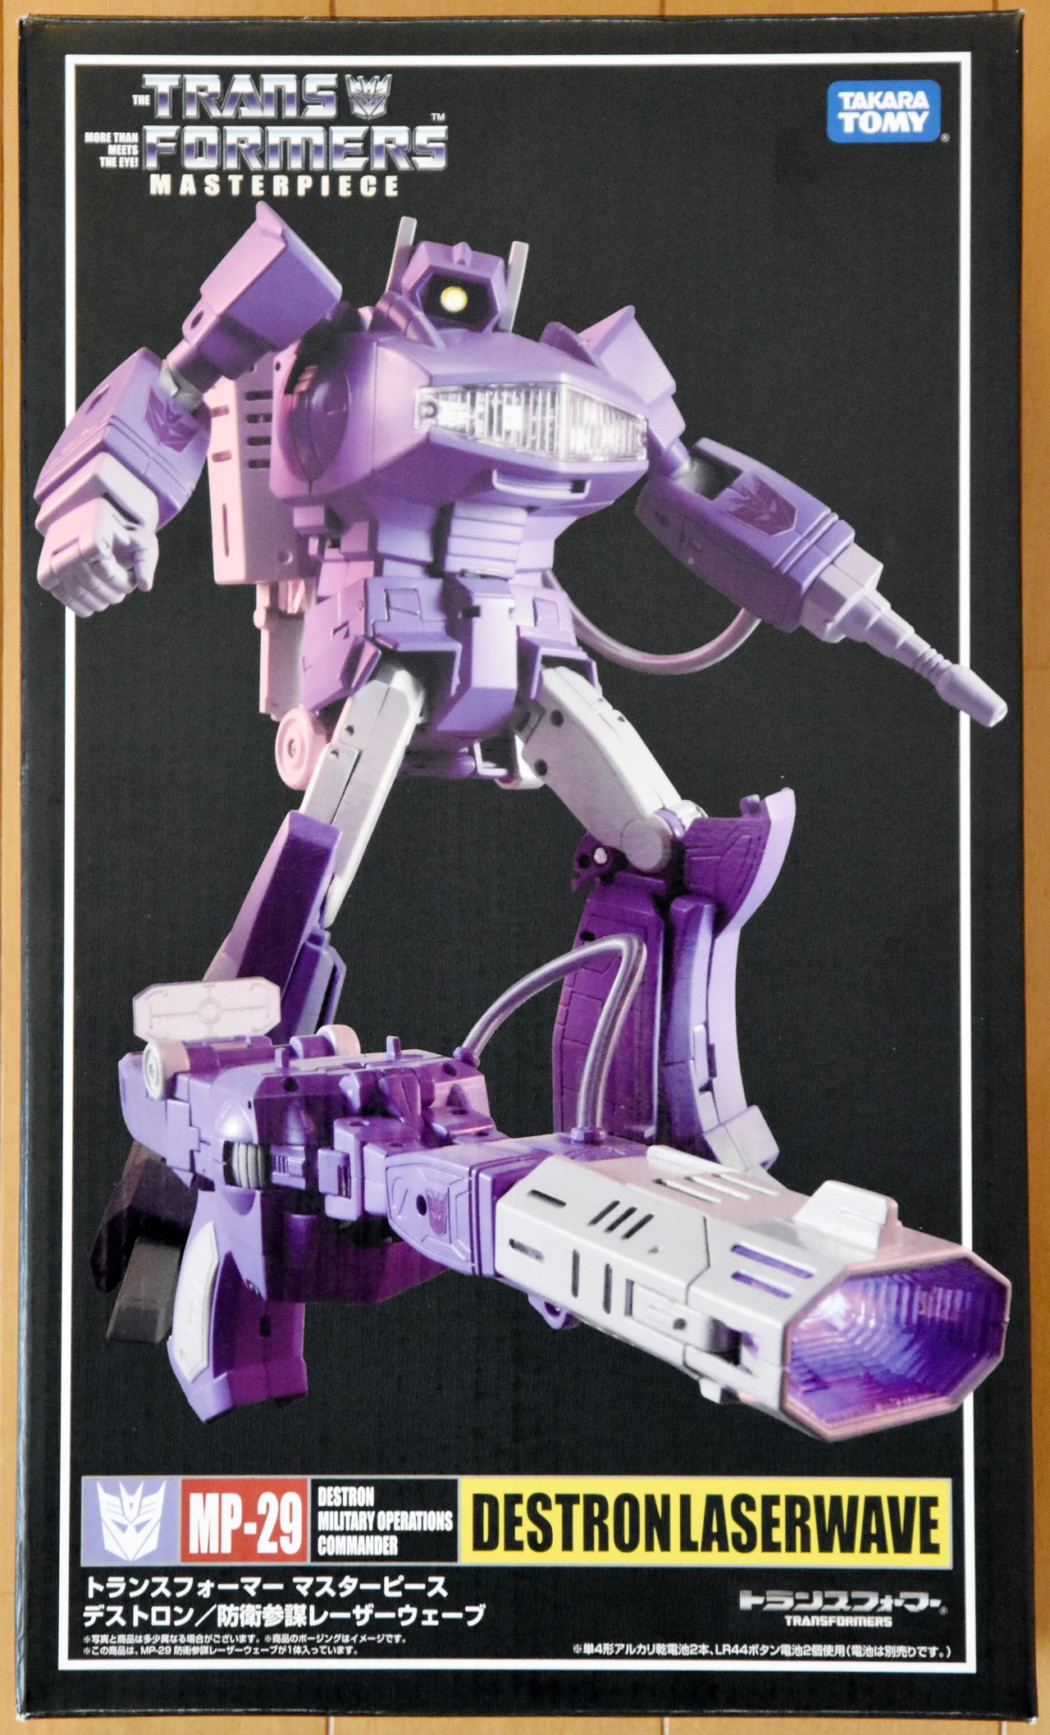 Transformers Masterpiece MP-29 Laserwave (Shockwave) by Takara Tomy (Part 1: Unbox)